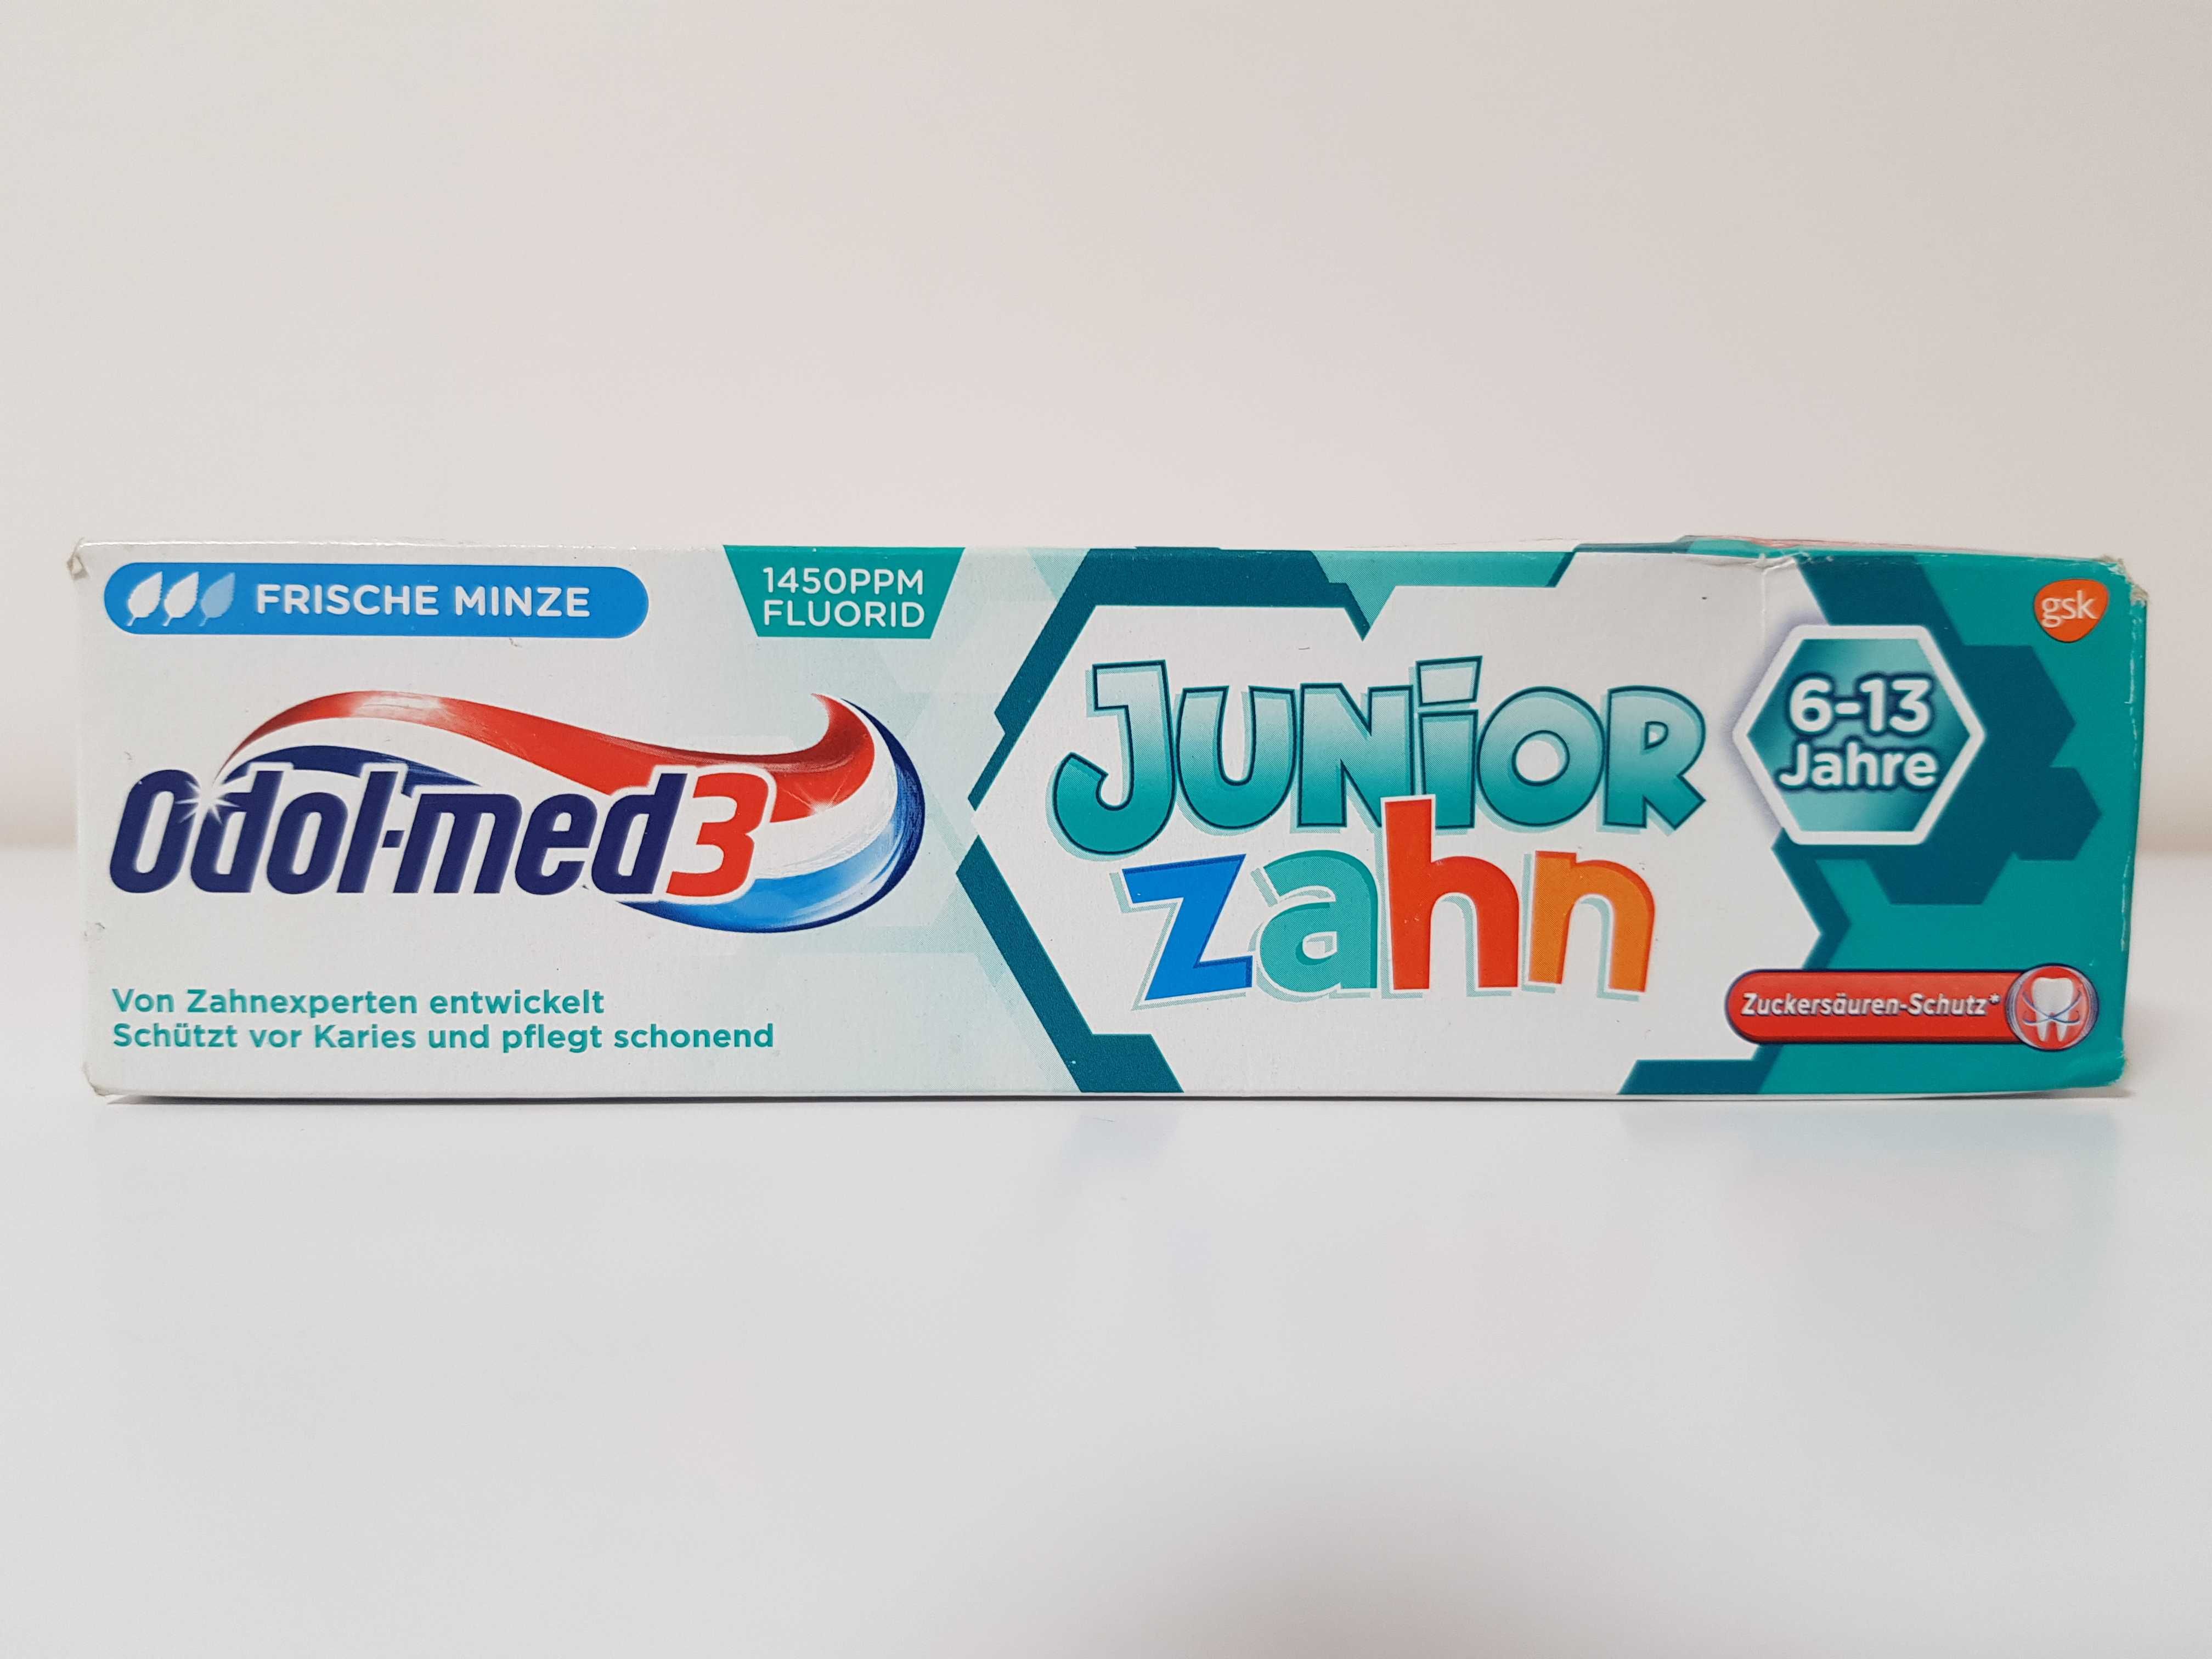 Дитяча зубна паста Odol-med3 Junior Zahn 6-13 Jahre (75ml)